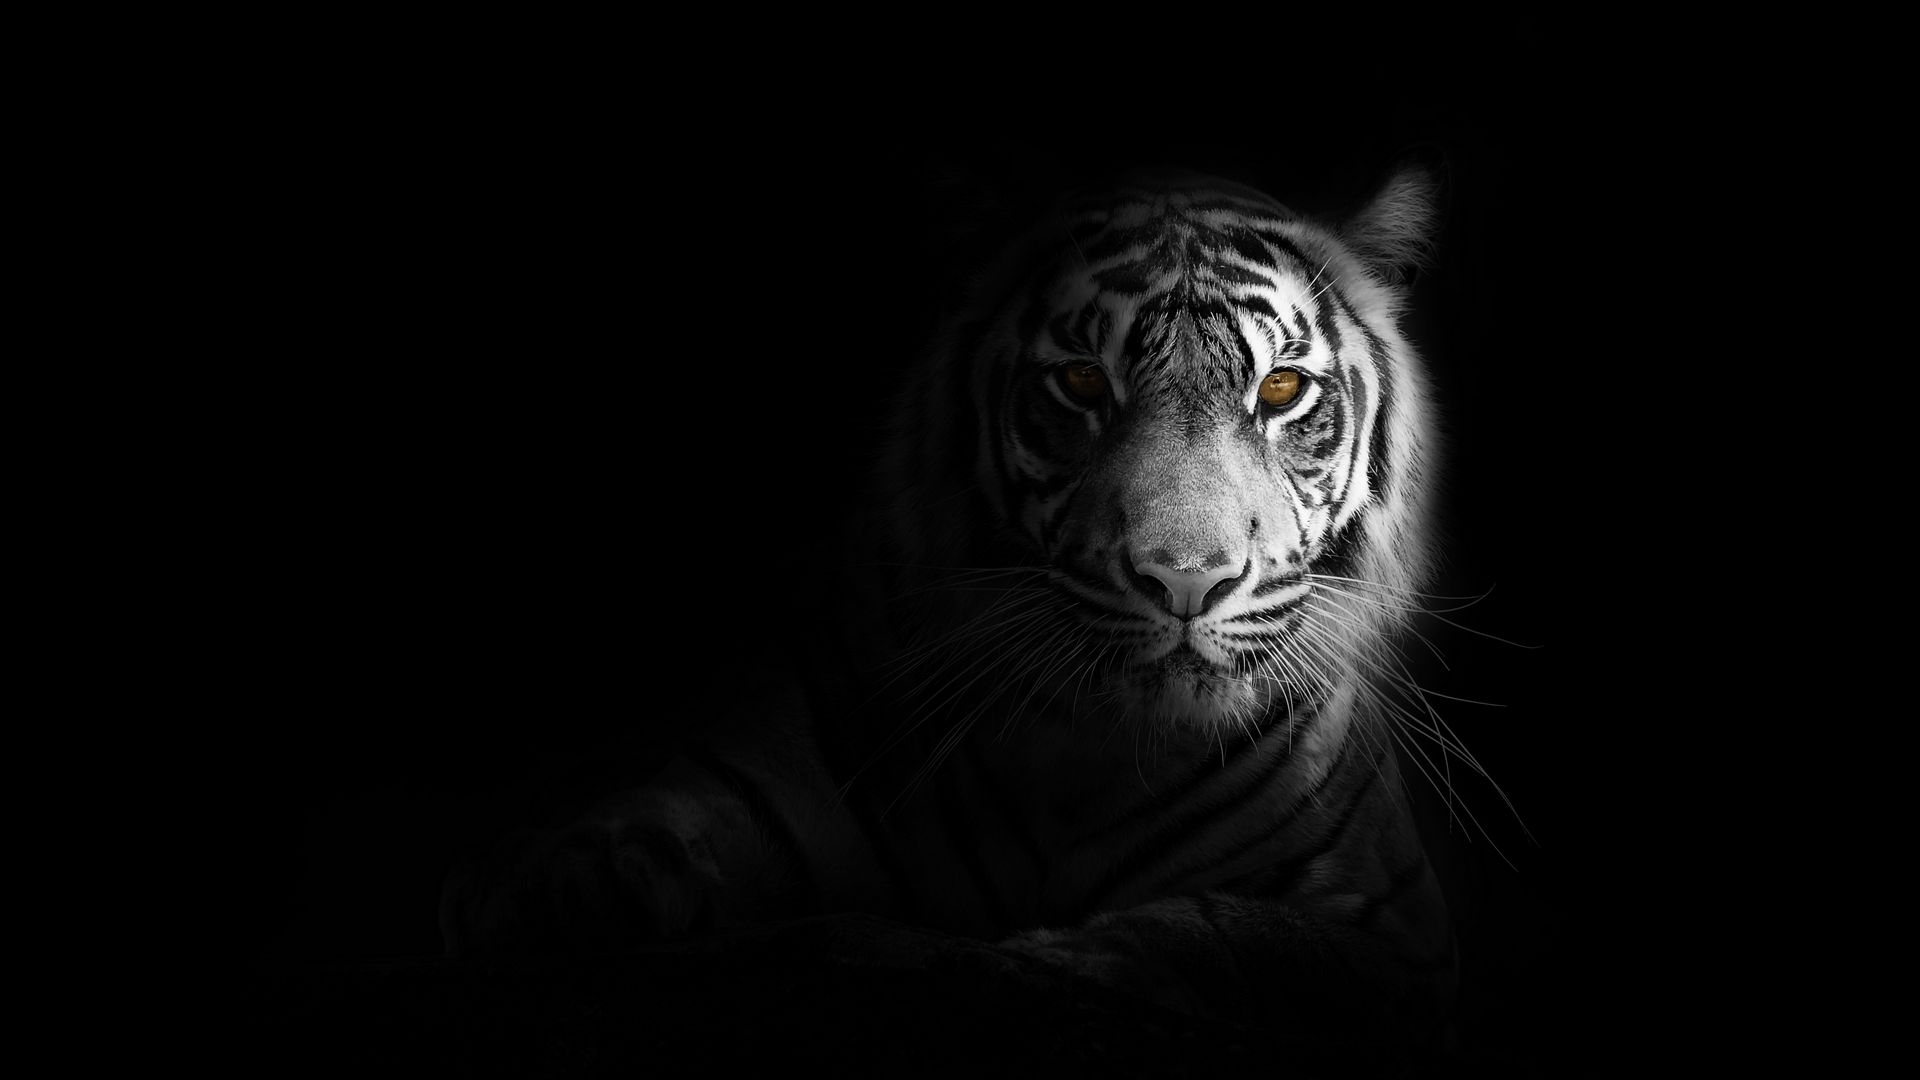 Jungle Tiger Wallpaper